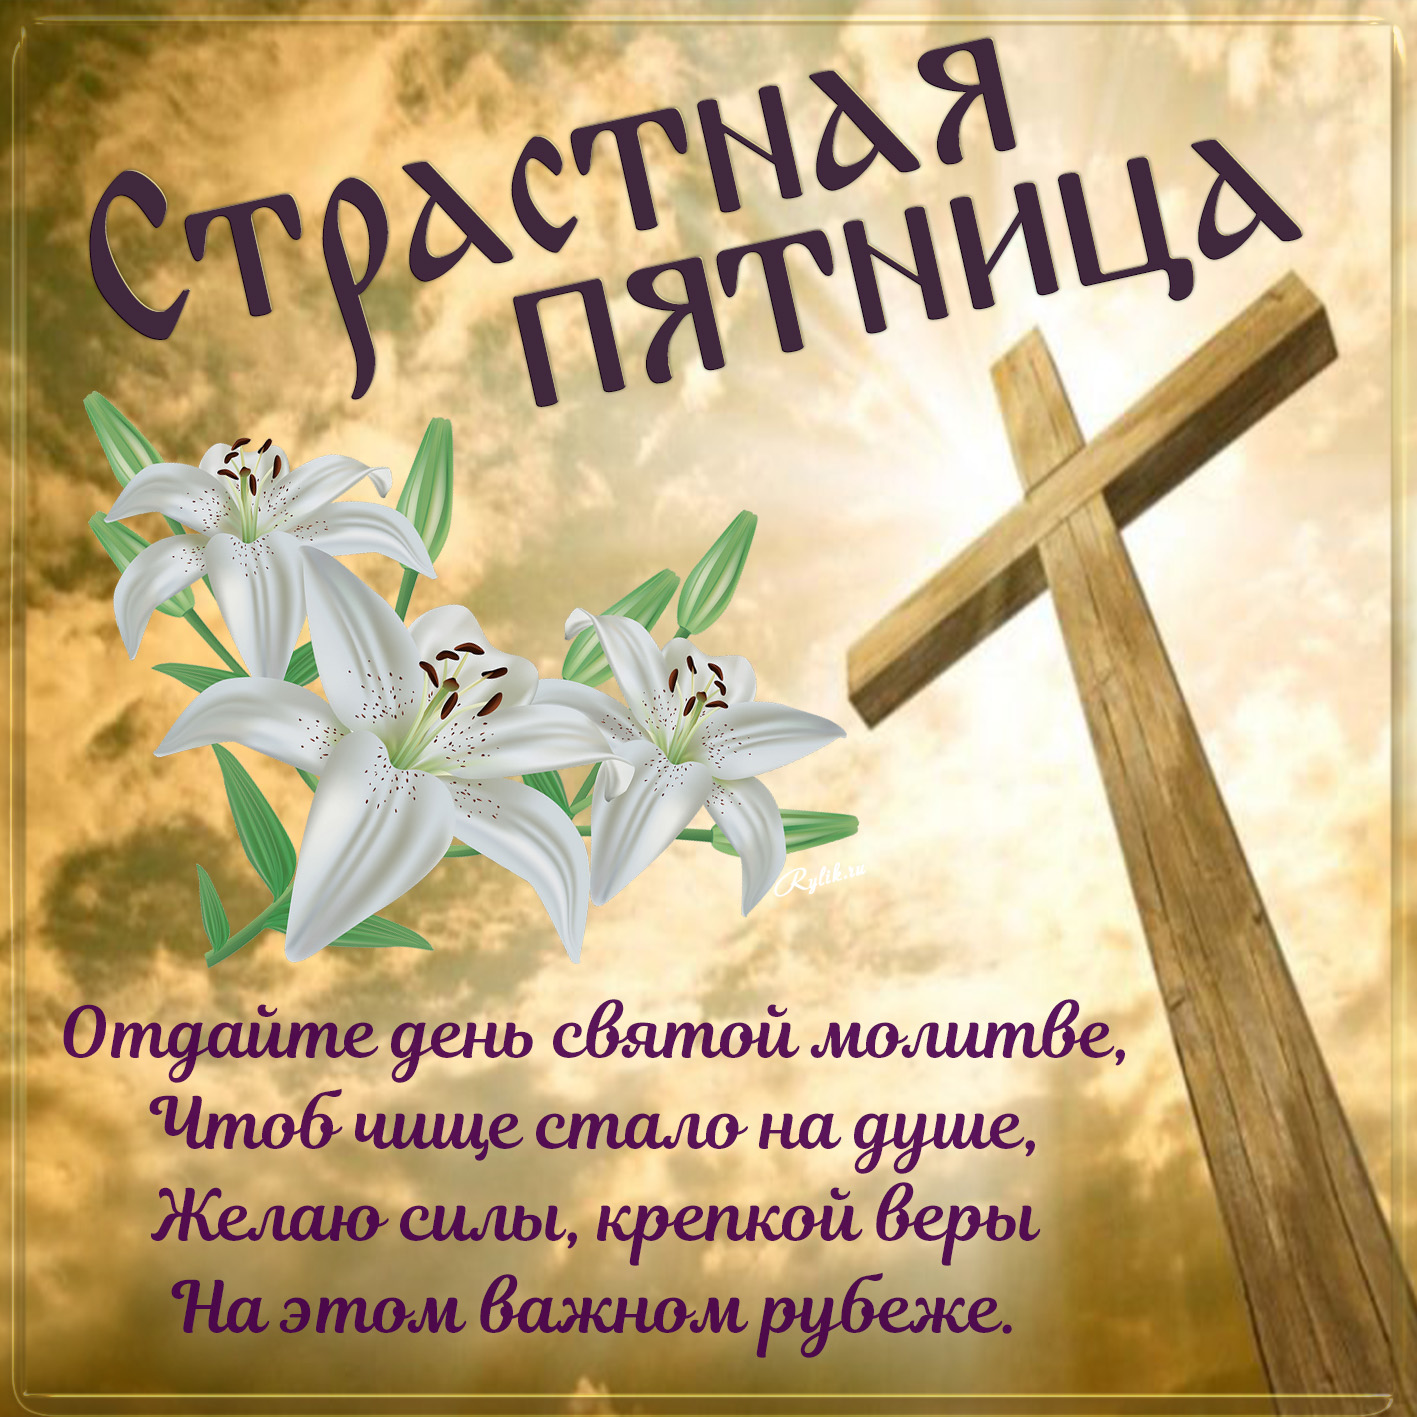 Открытка - цветы и крест с пожеланием на Страстную пятницу